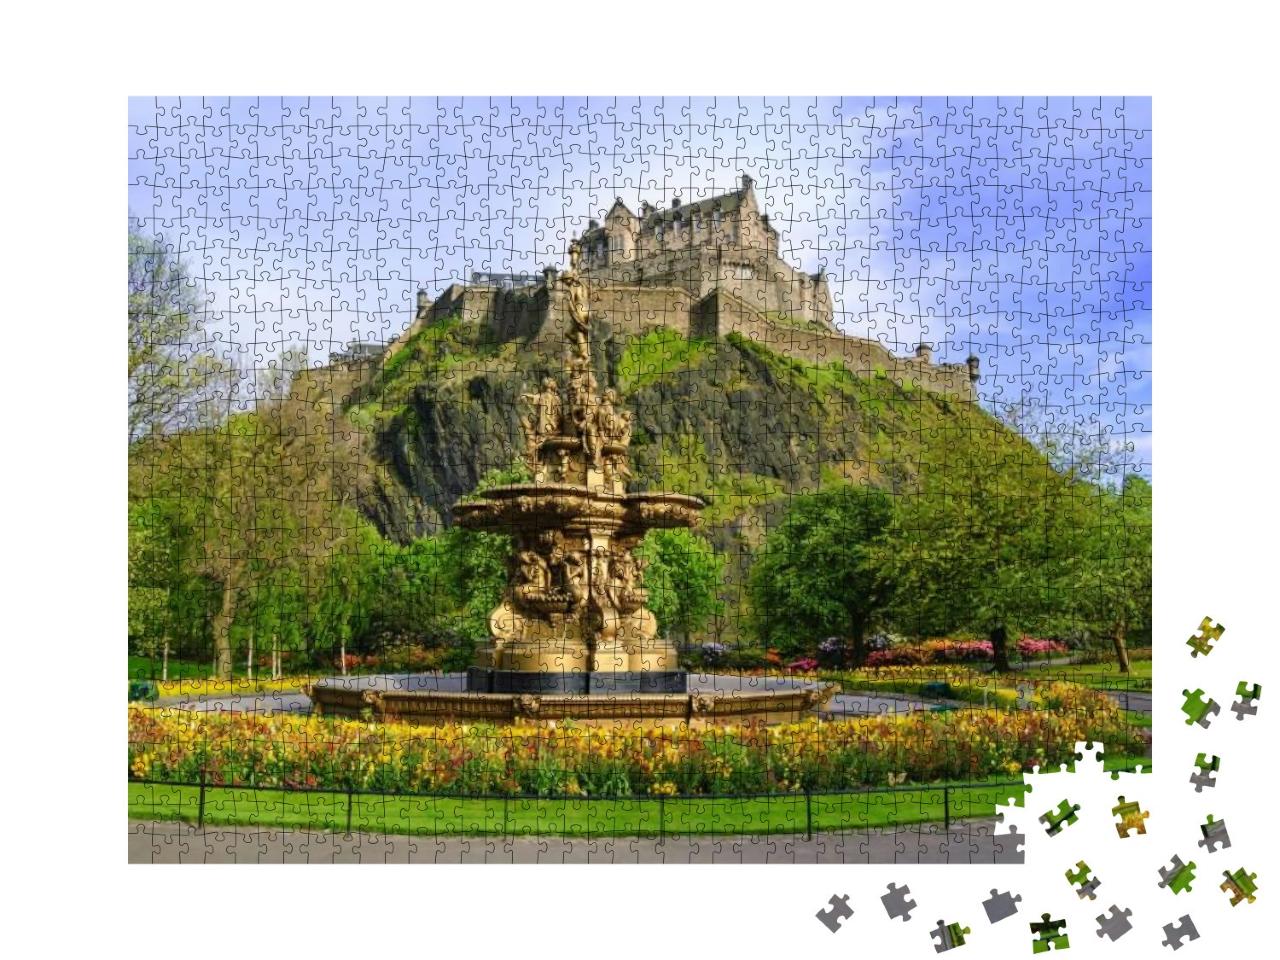 Puzzle 1000 Teile „Ross Fountain in den Princes Street Gardens, Edinburgh, Schottland“